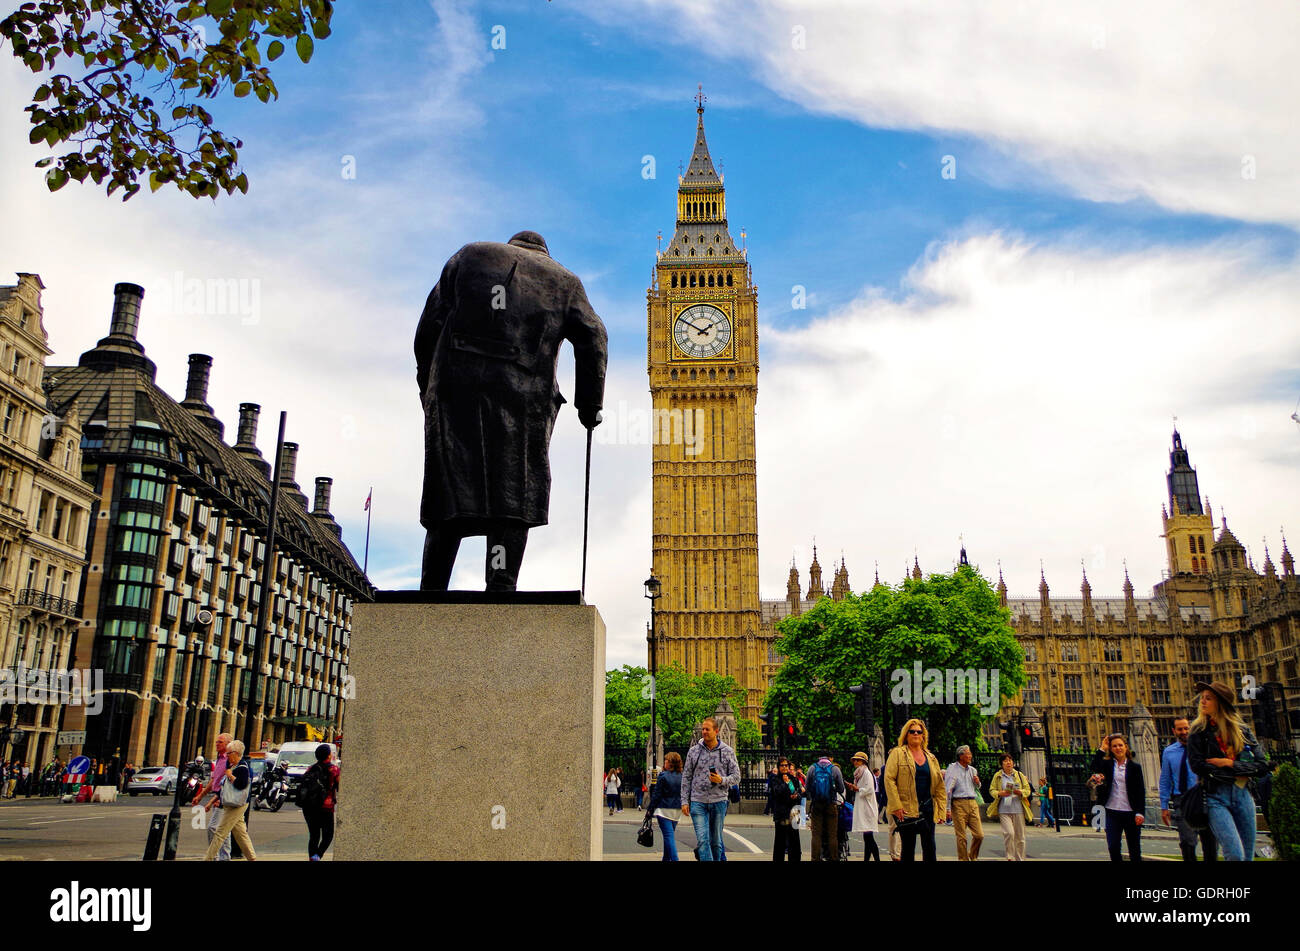 La statue de Sir Winston Churchill regards sur la majestueuse Big Ben, une destination touristique populaire, à Londres. Banque D'Images